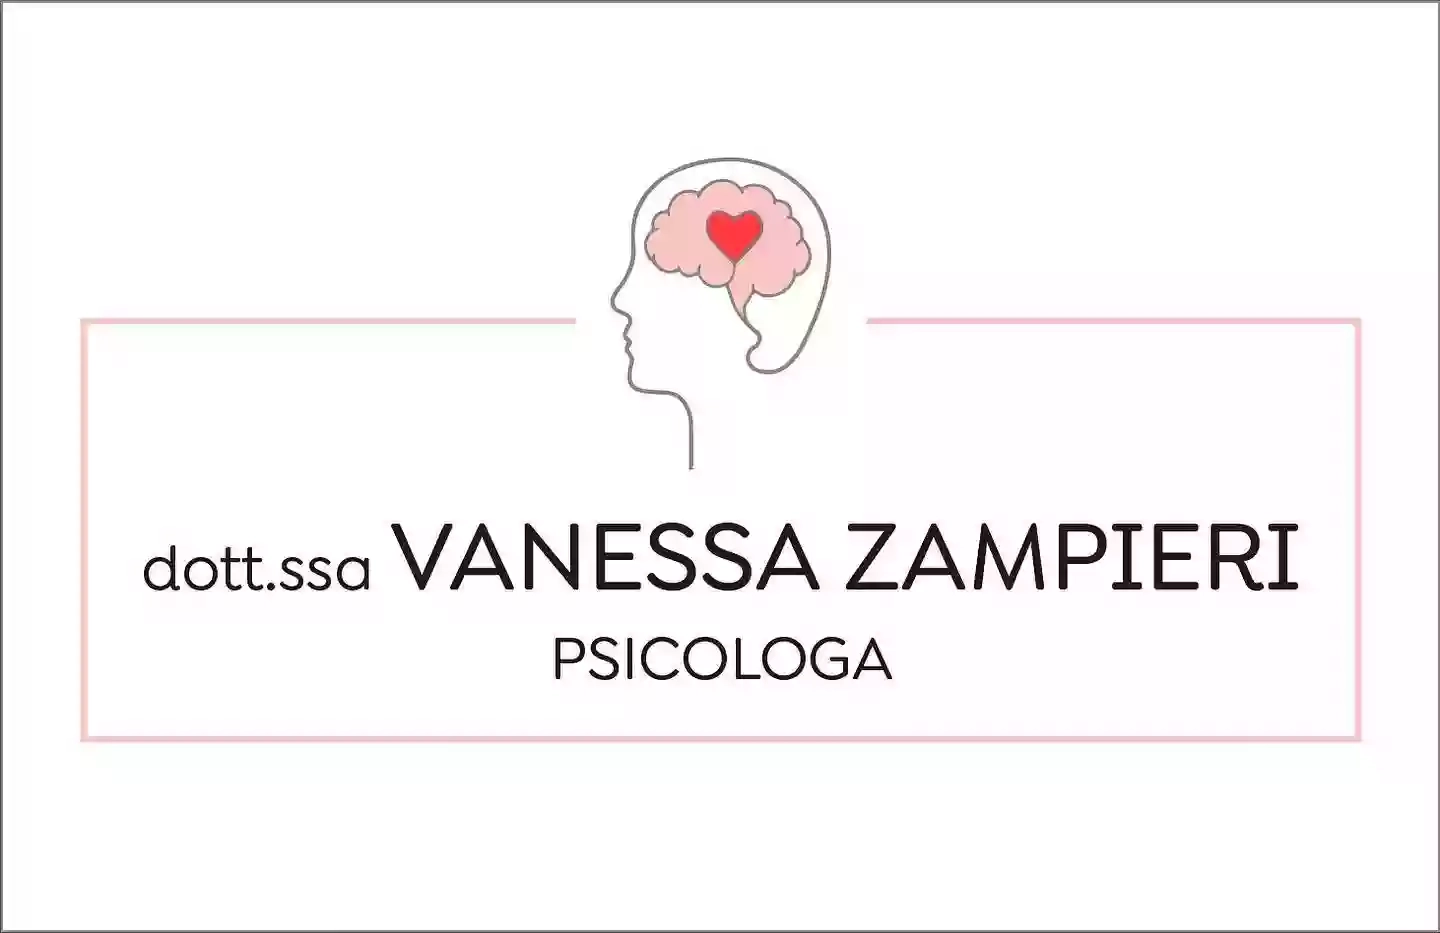 Dott.ssa Vanessa Zampieri - Psicologa Mirano e Sessuologa